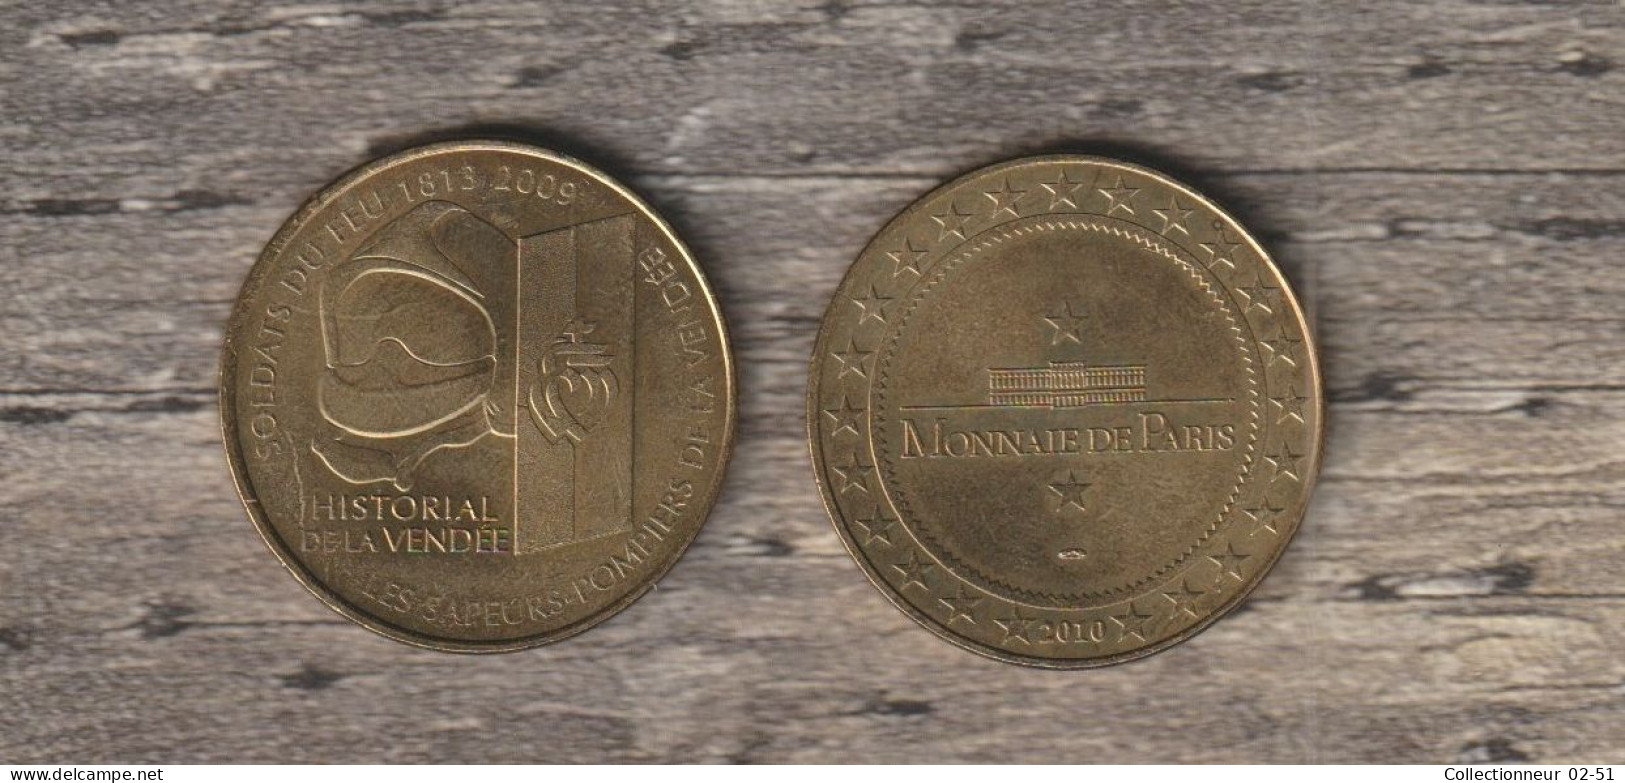 Monnaie De Paris :  Historial De La Vendée - 2010 - 2010